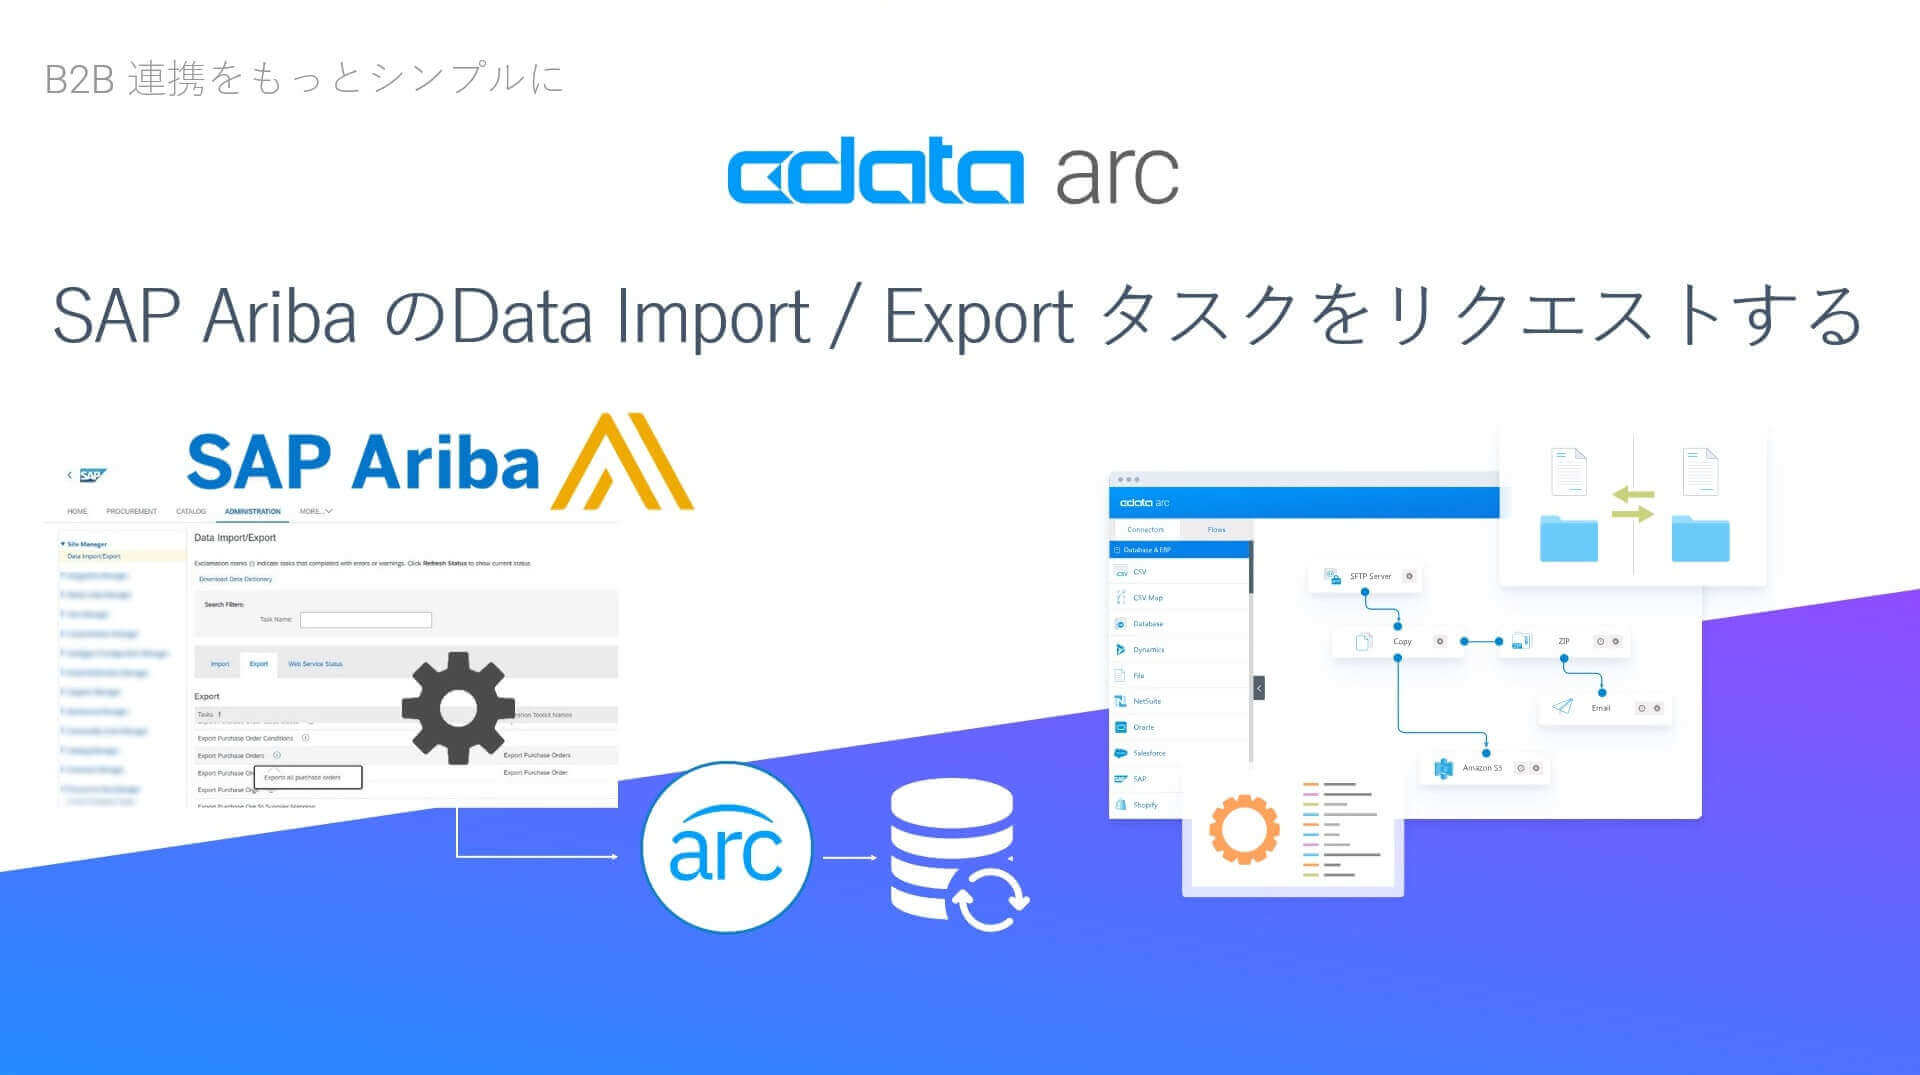 CData Arc で、SAP Ariba のData Import/Export タスクをリクエストする